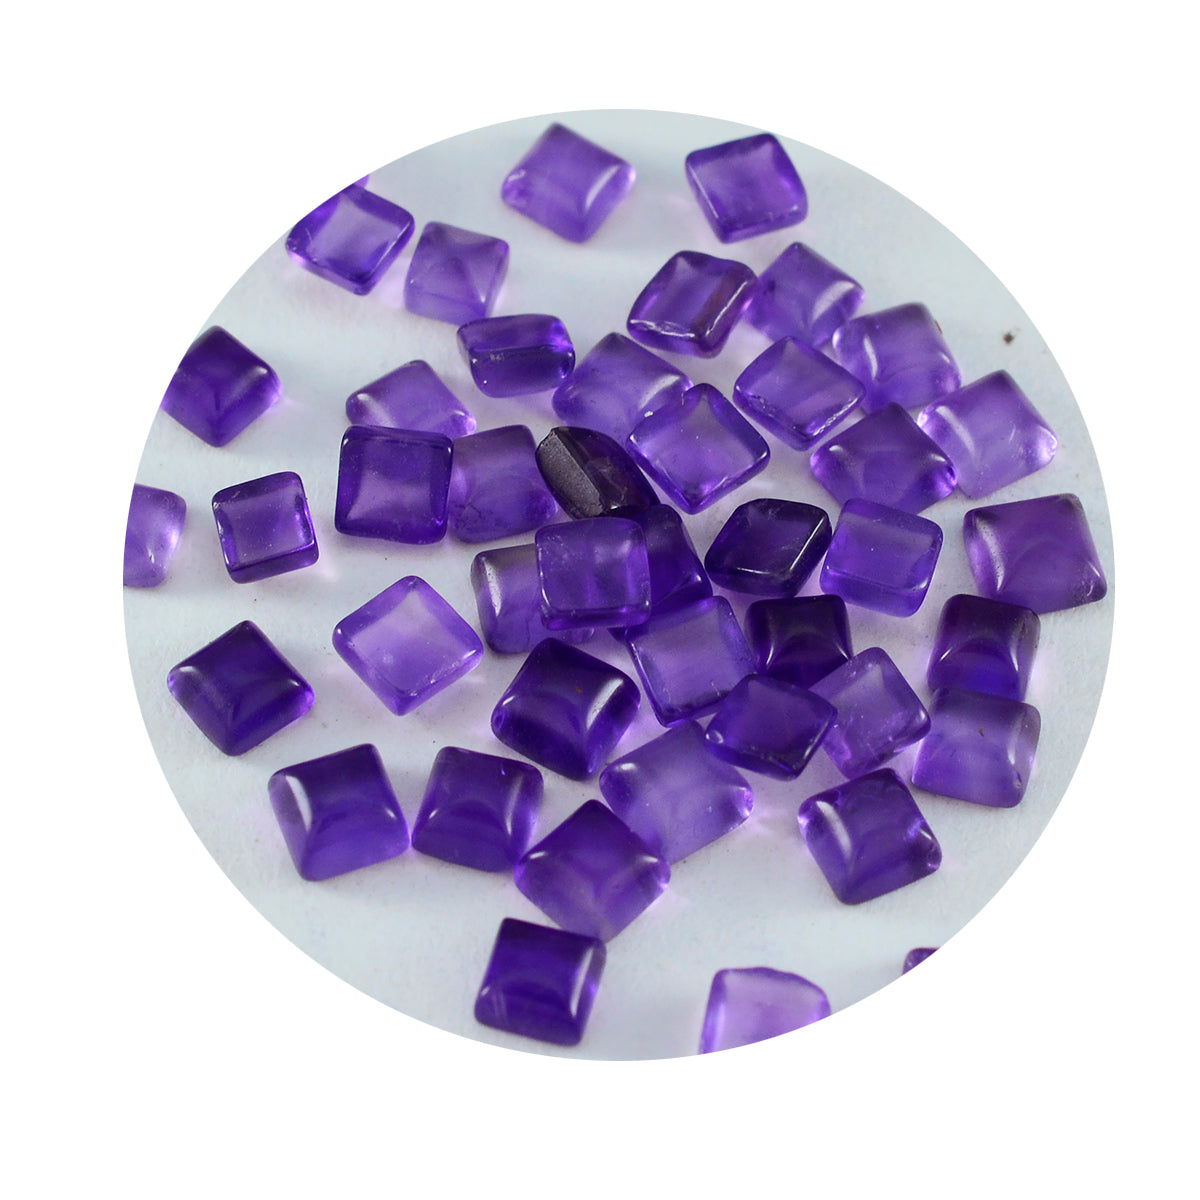 Riyogems 1 pc cabochon d'améthyste violette 4x4 mm forme carrée bonne qualité pierre précieuse en vrac